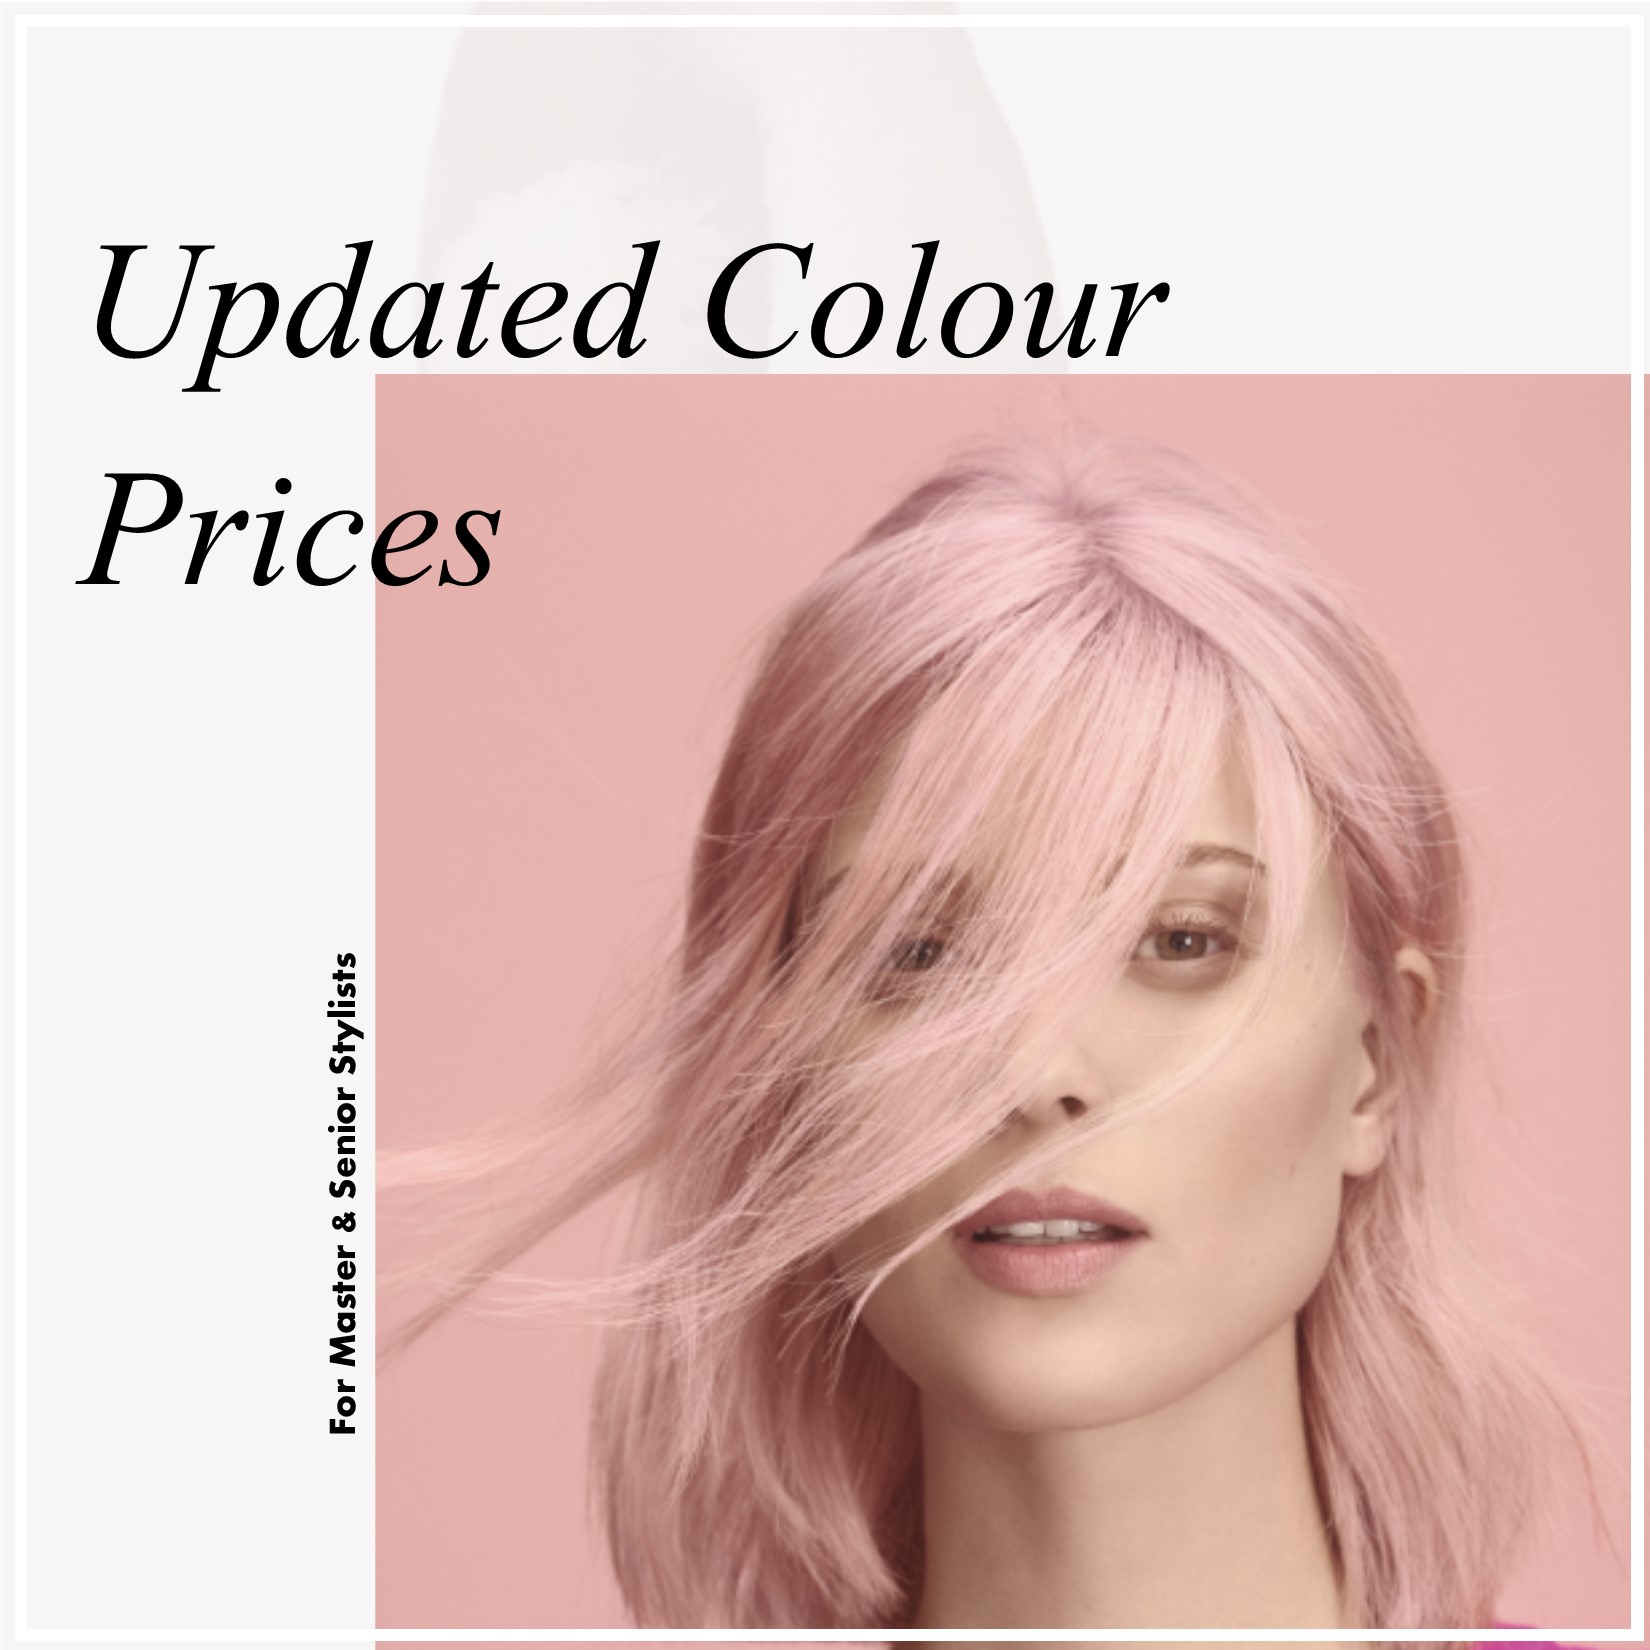 Senior/Master Colour Price Increases - Zazou Hair Salon and Academy ...